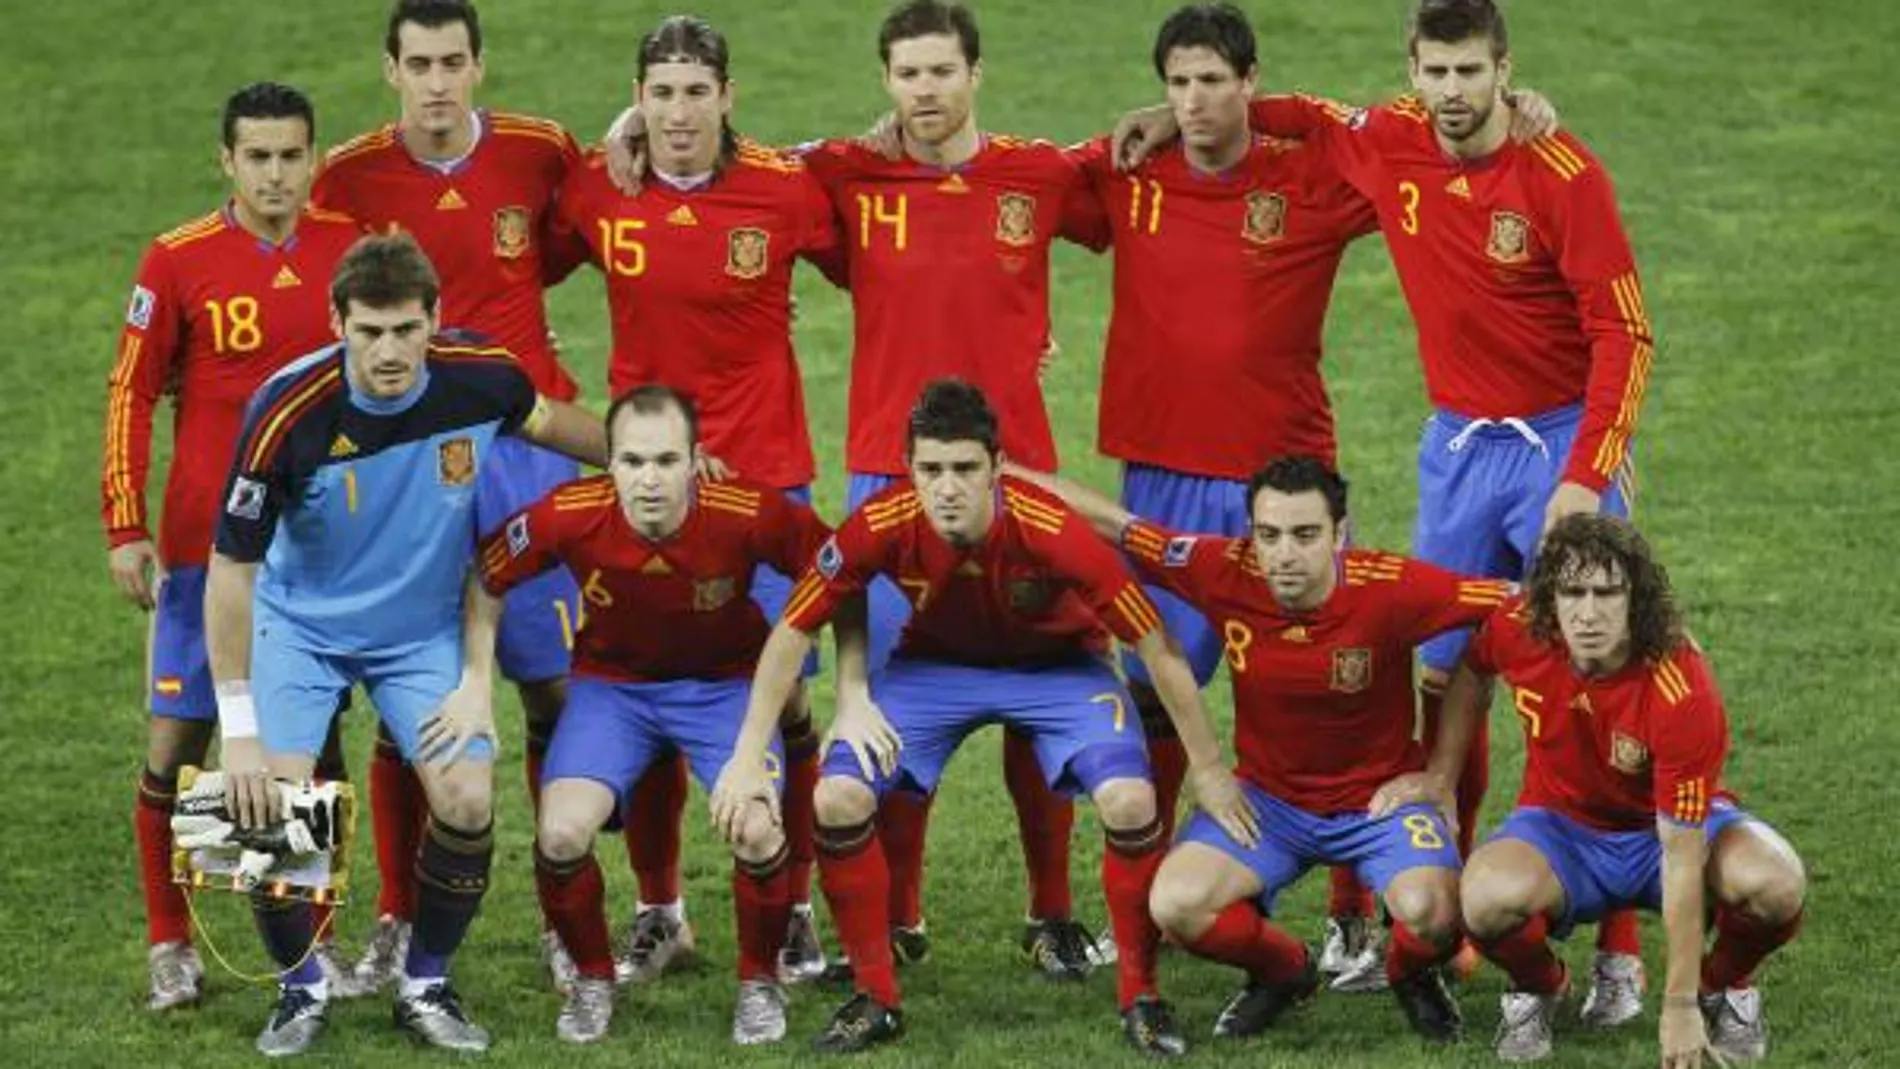 La Selección española de fútbol, Premio Príncipe de Asturias de los Deportes